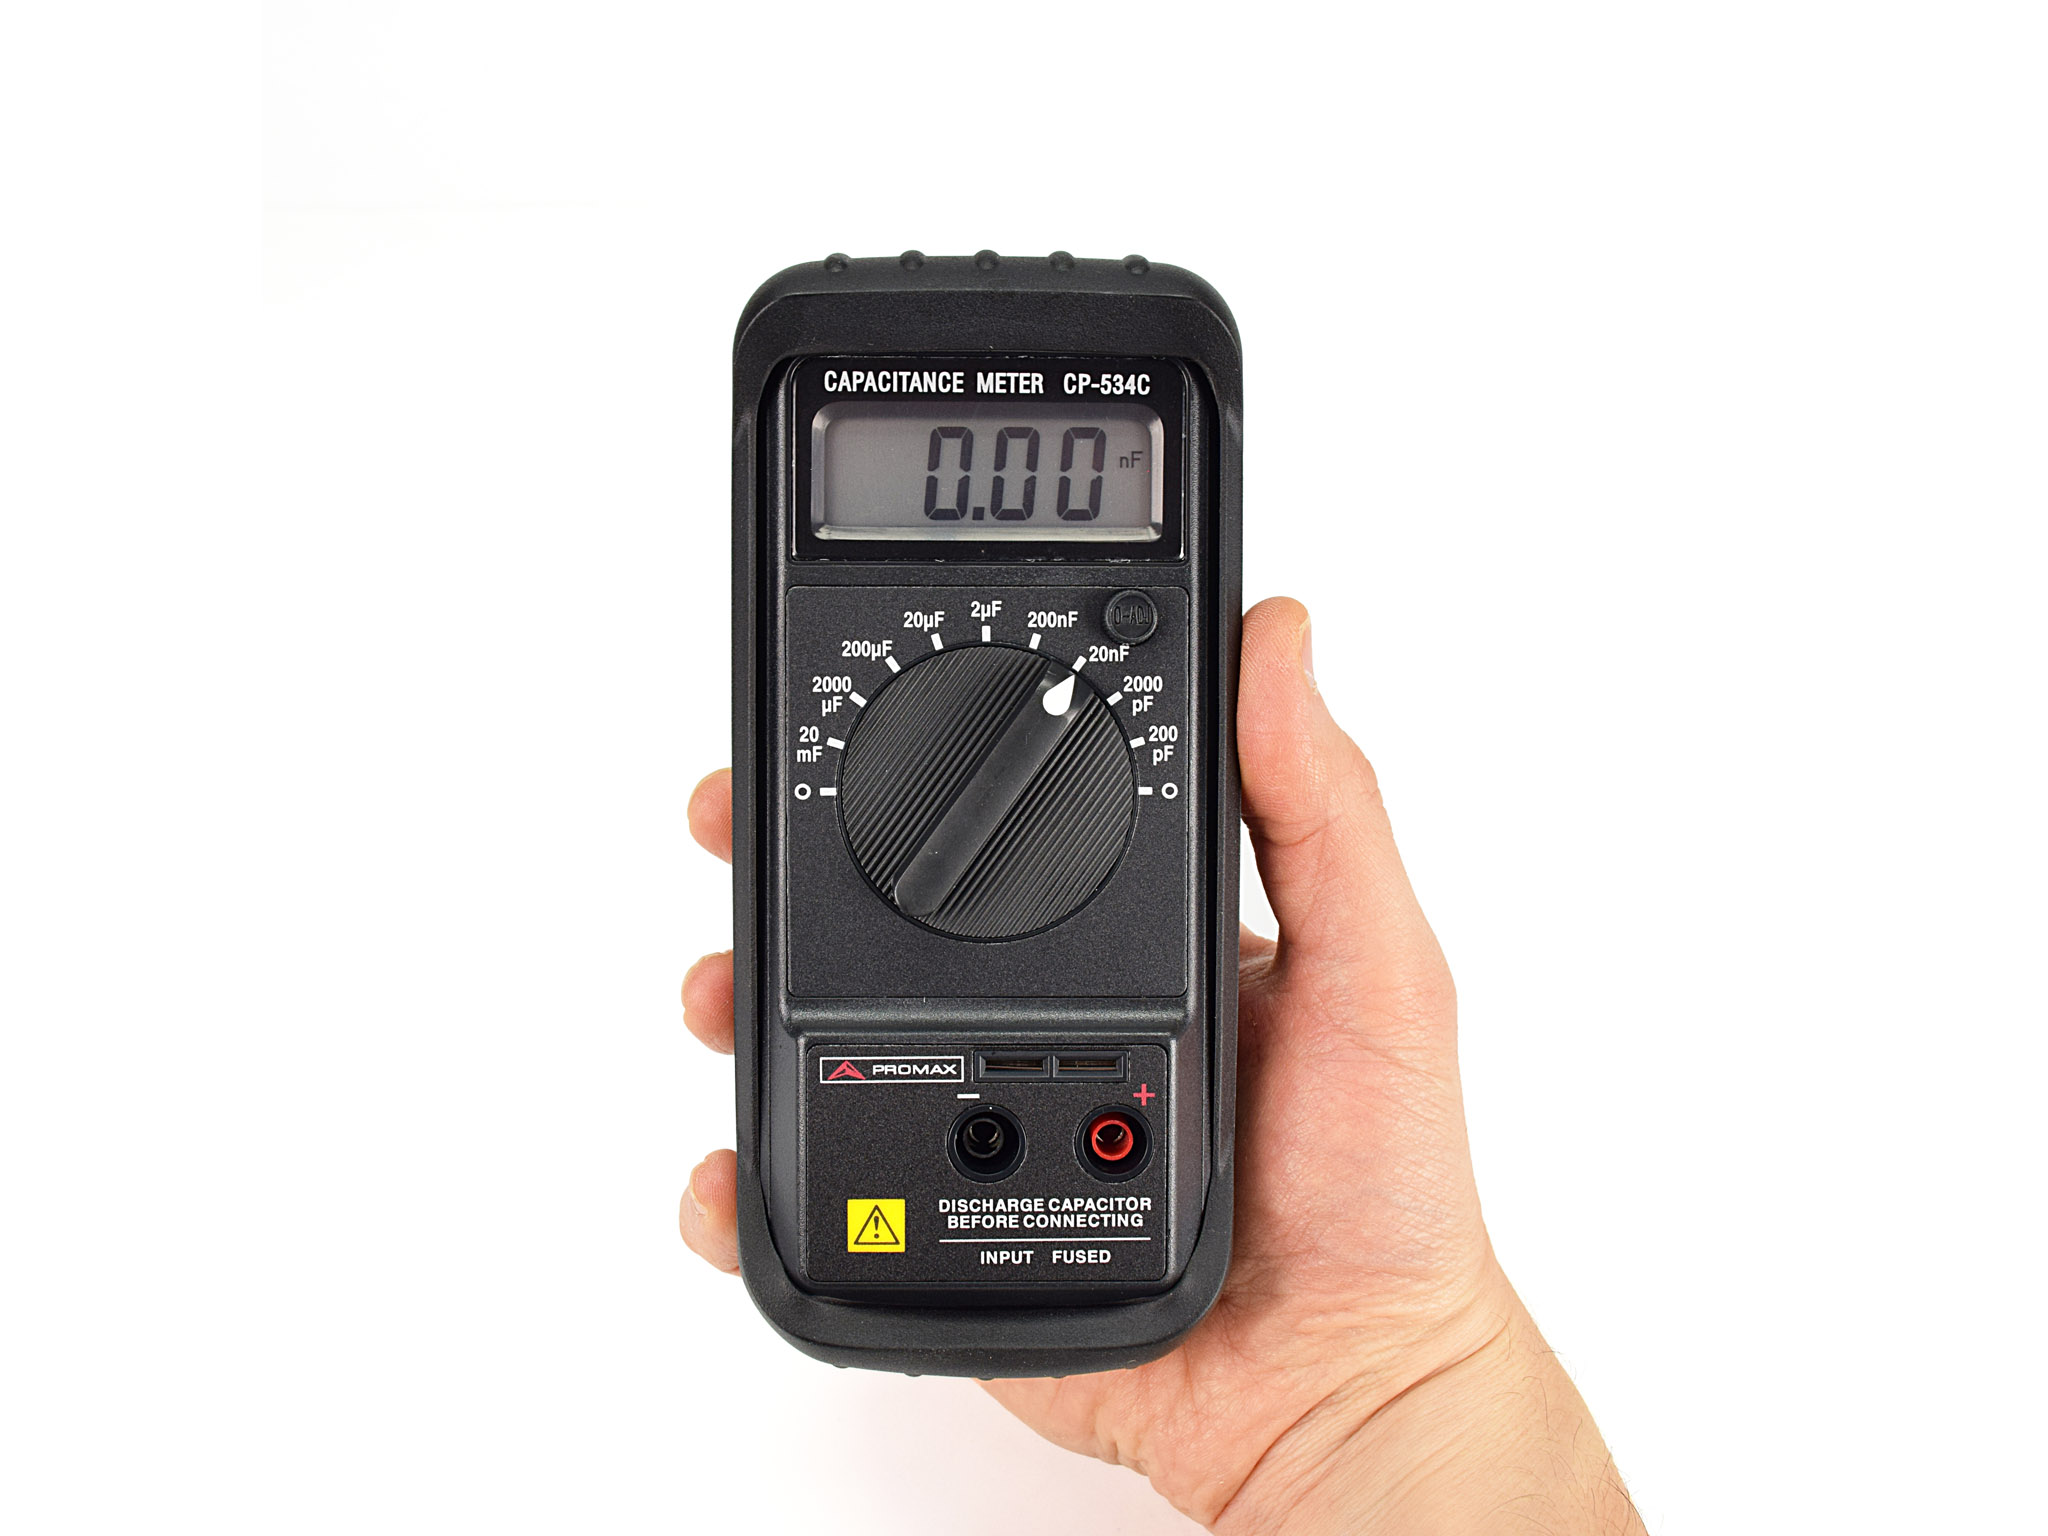 CP-534C: Capacitance meter